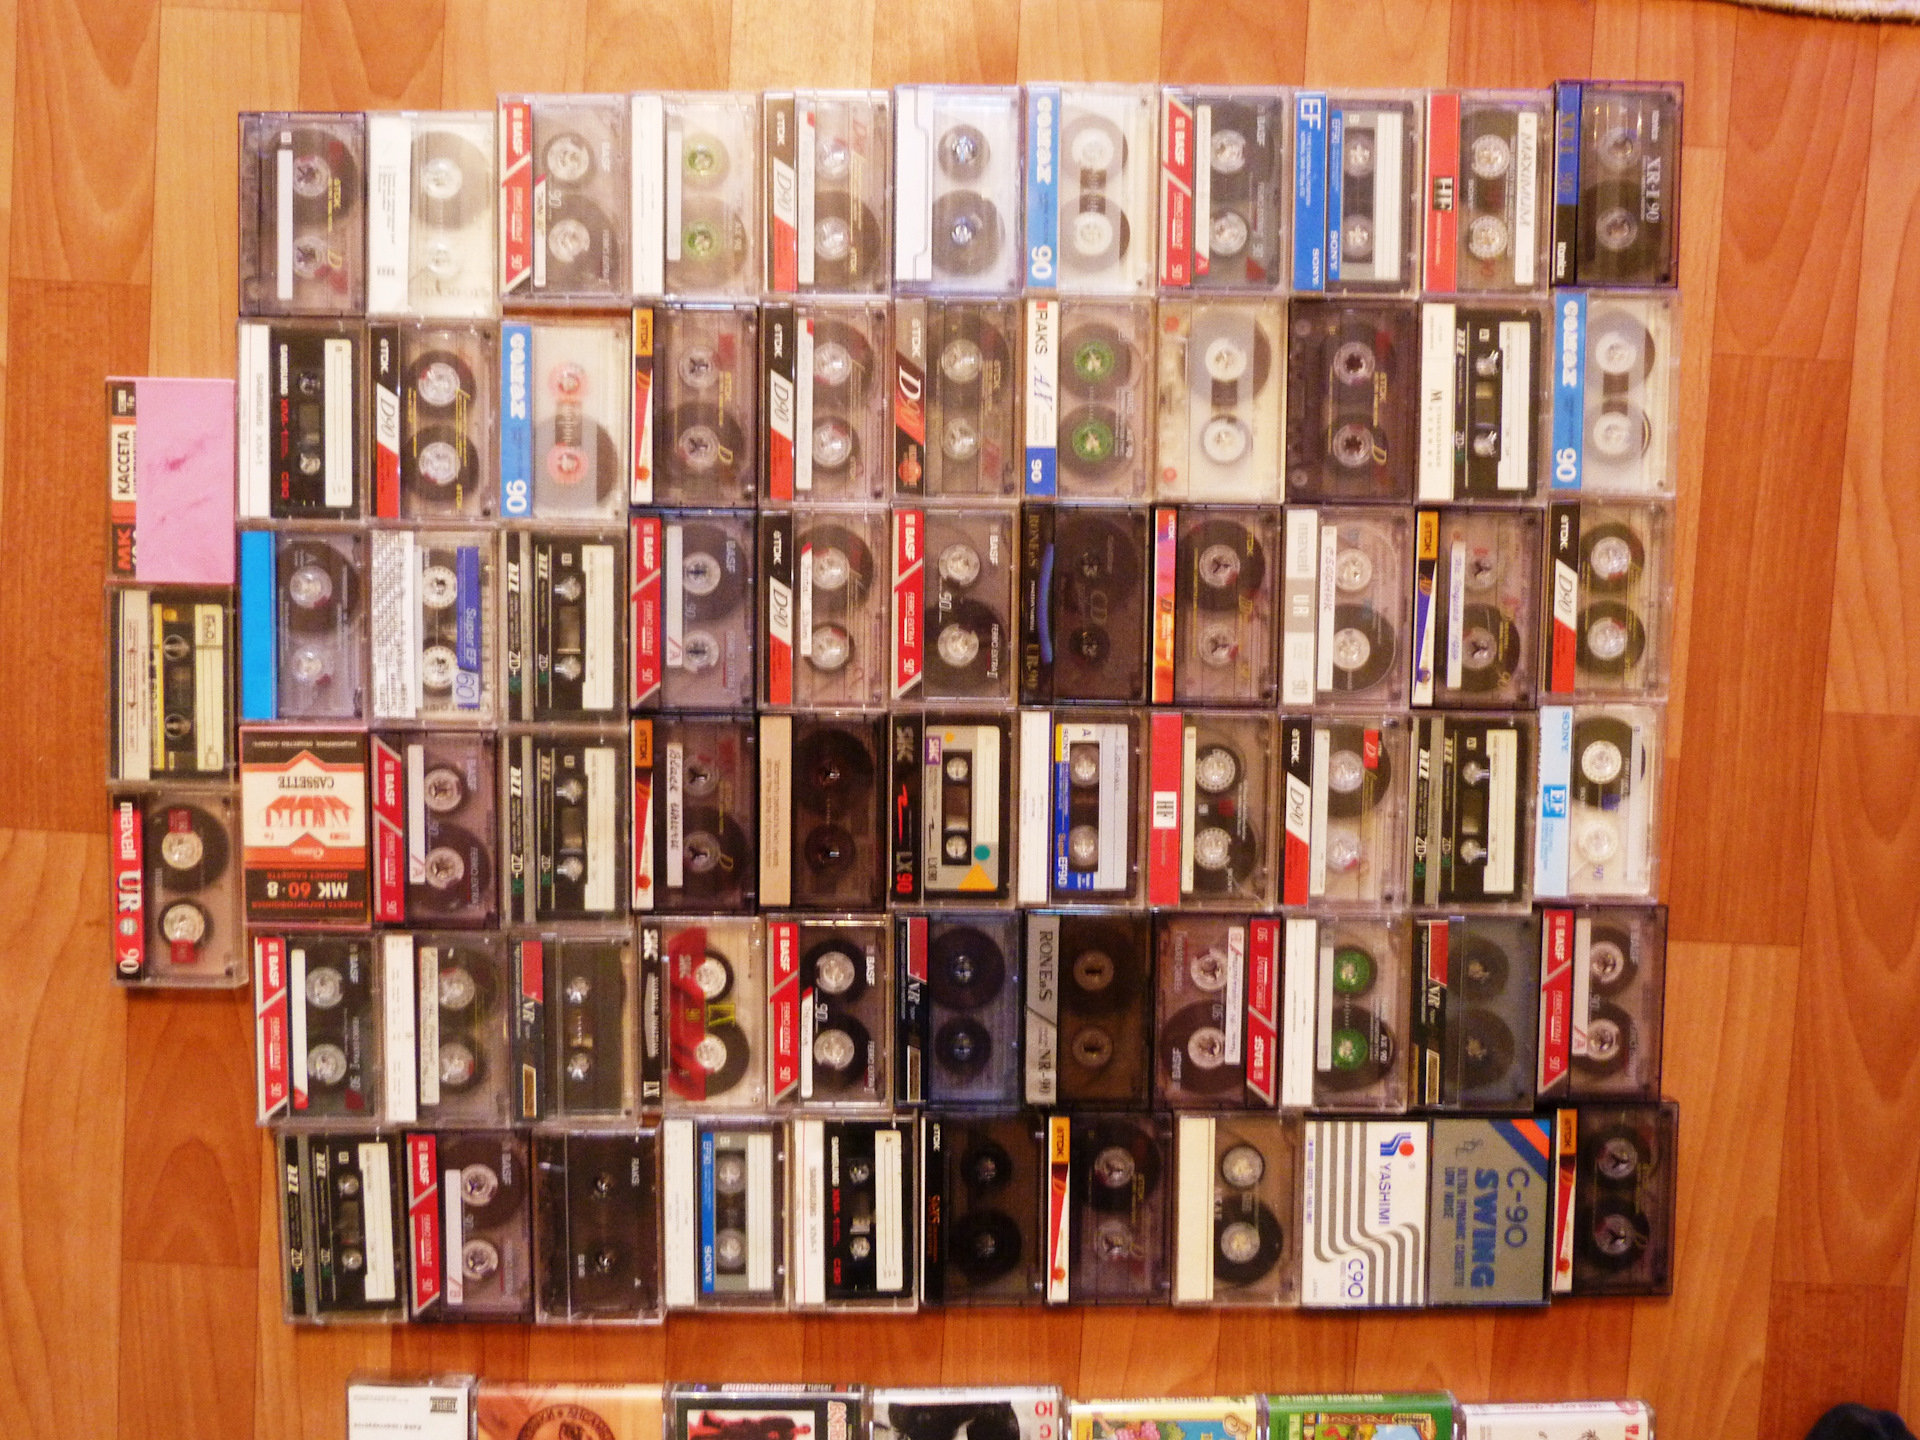 200 кассет. Technics каталог моделей 1970 -1999 гг. Technics каталог моделей кассетных дек год выпуска 1970 -1985.